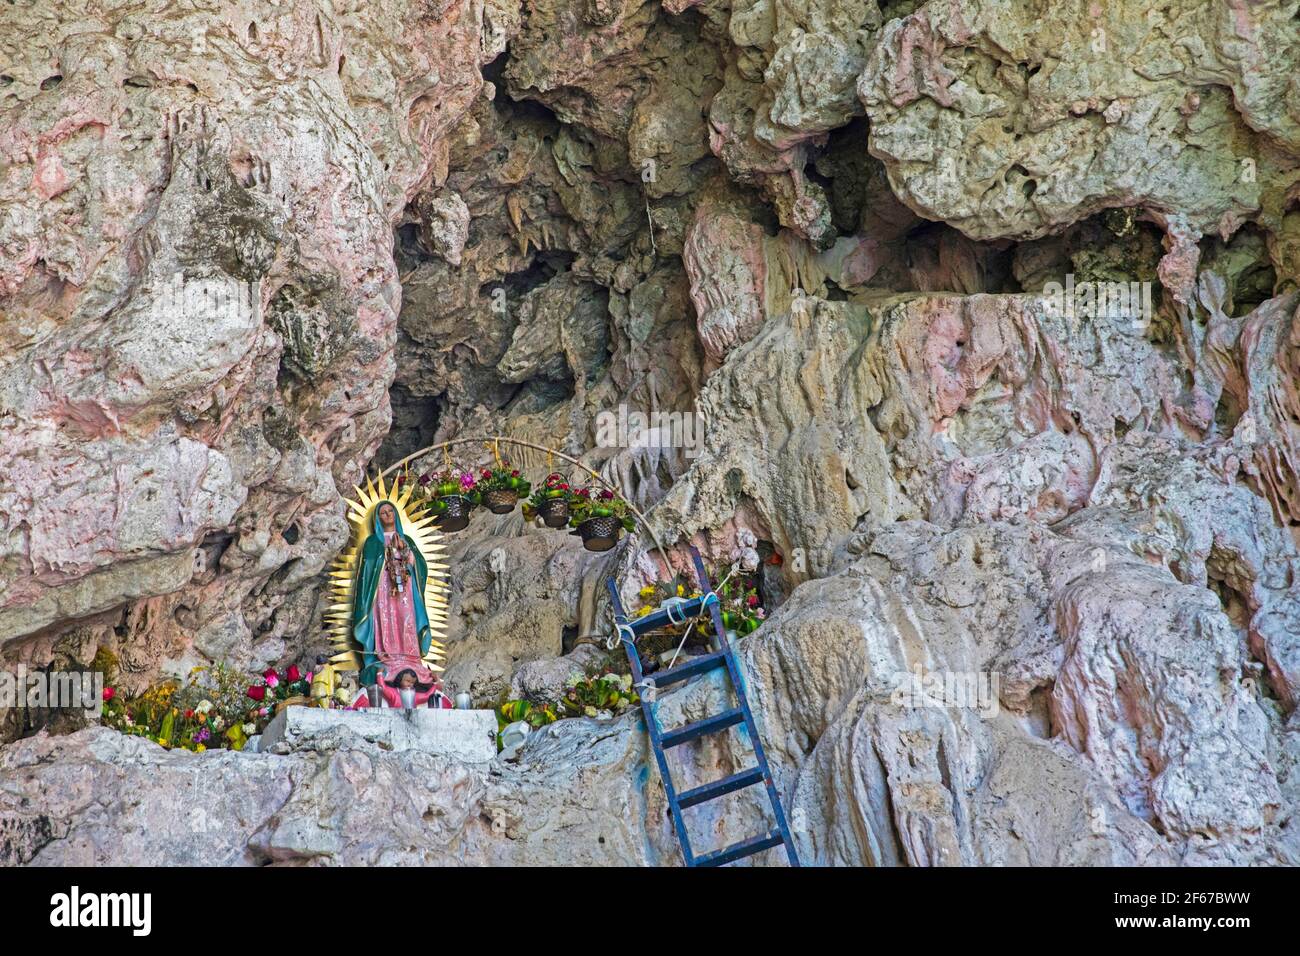 Sanctuaire à l'intérieur de la Cueva de los Colores / Grotte des couleurs dans le Parc National du Sumidero Canyon près de Chiapa de Corzo, Chiapas, au sud du Mexique Banque D'Images